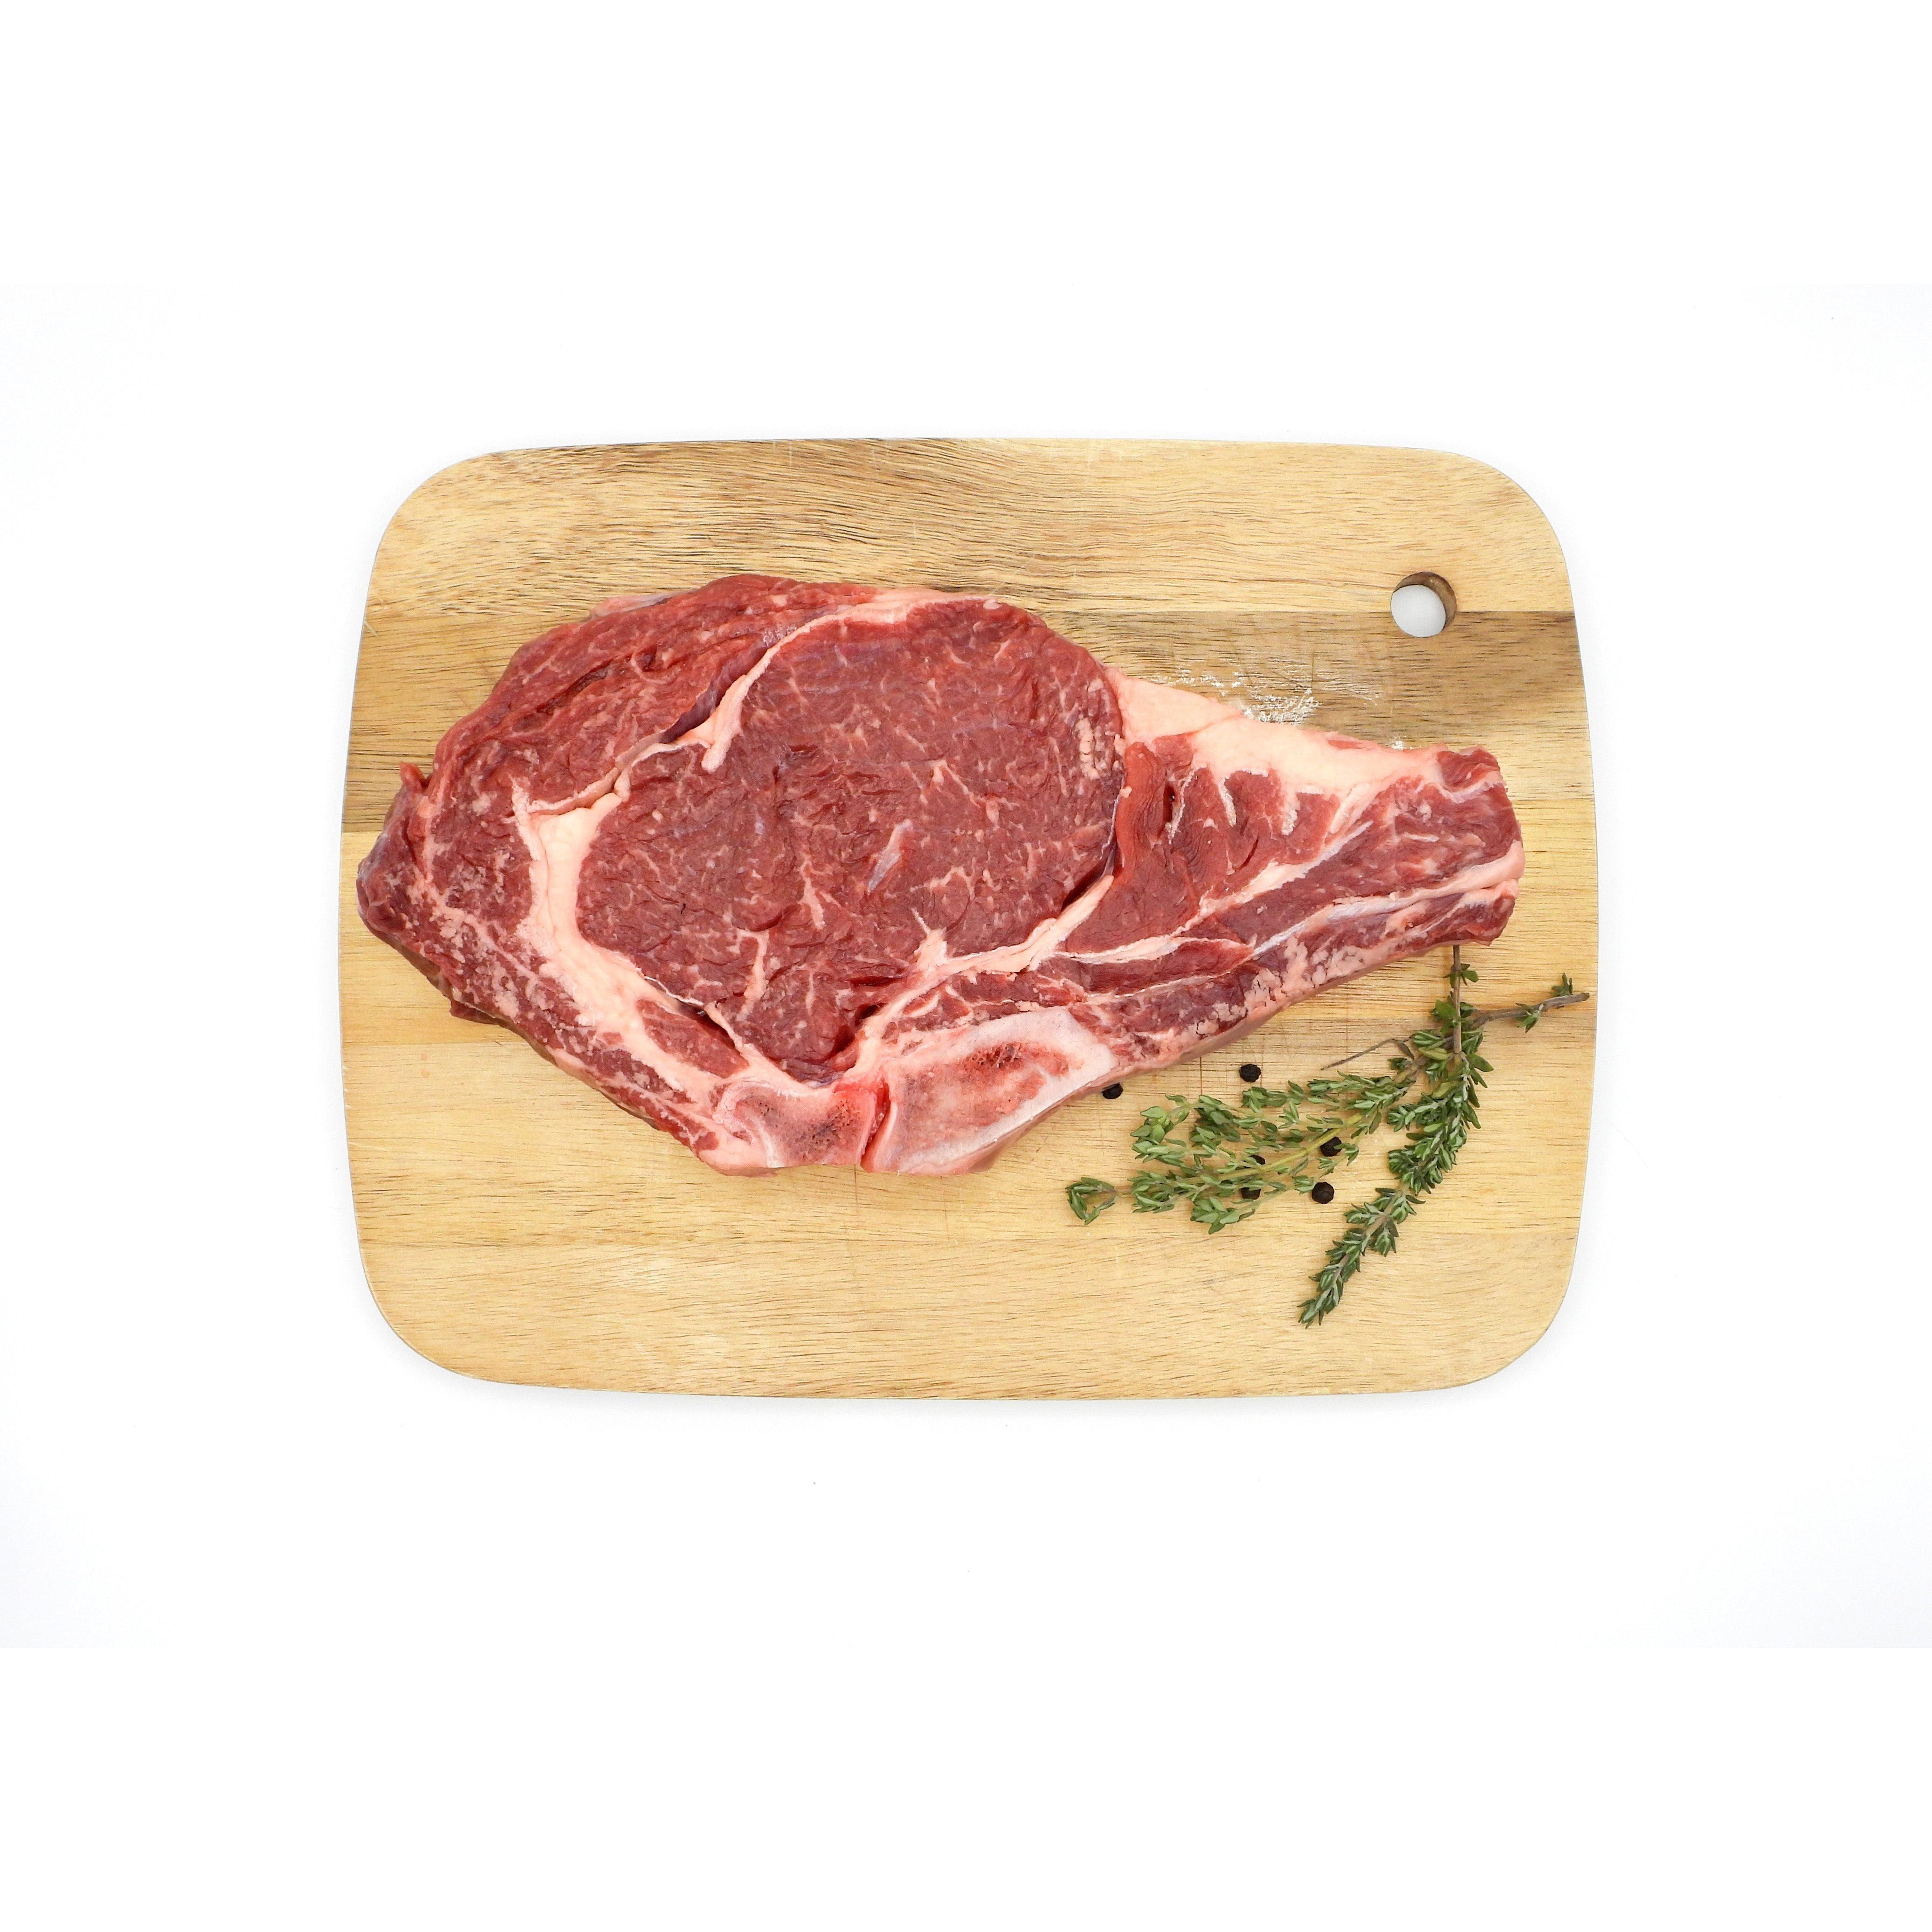 100% Grassfed Wagyu Beef Rib Steak - Nutrient Farm